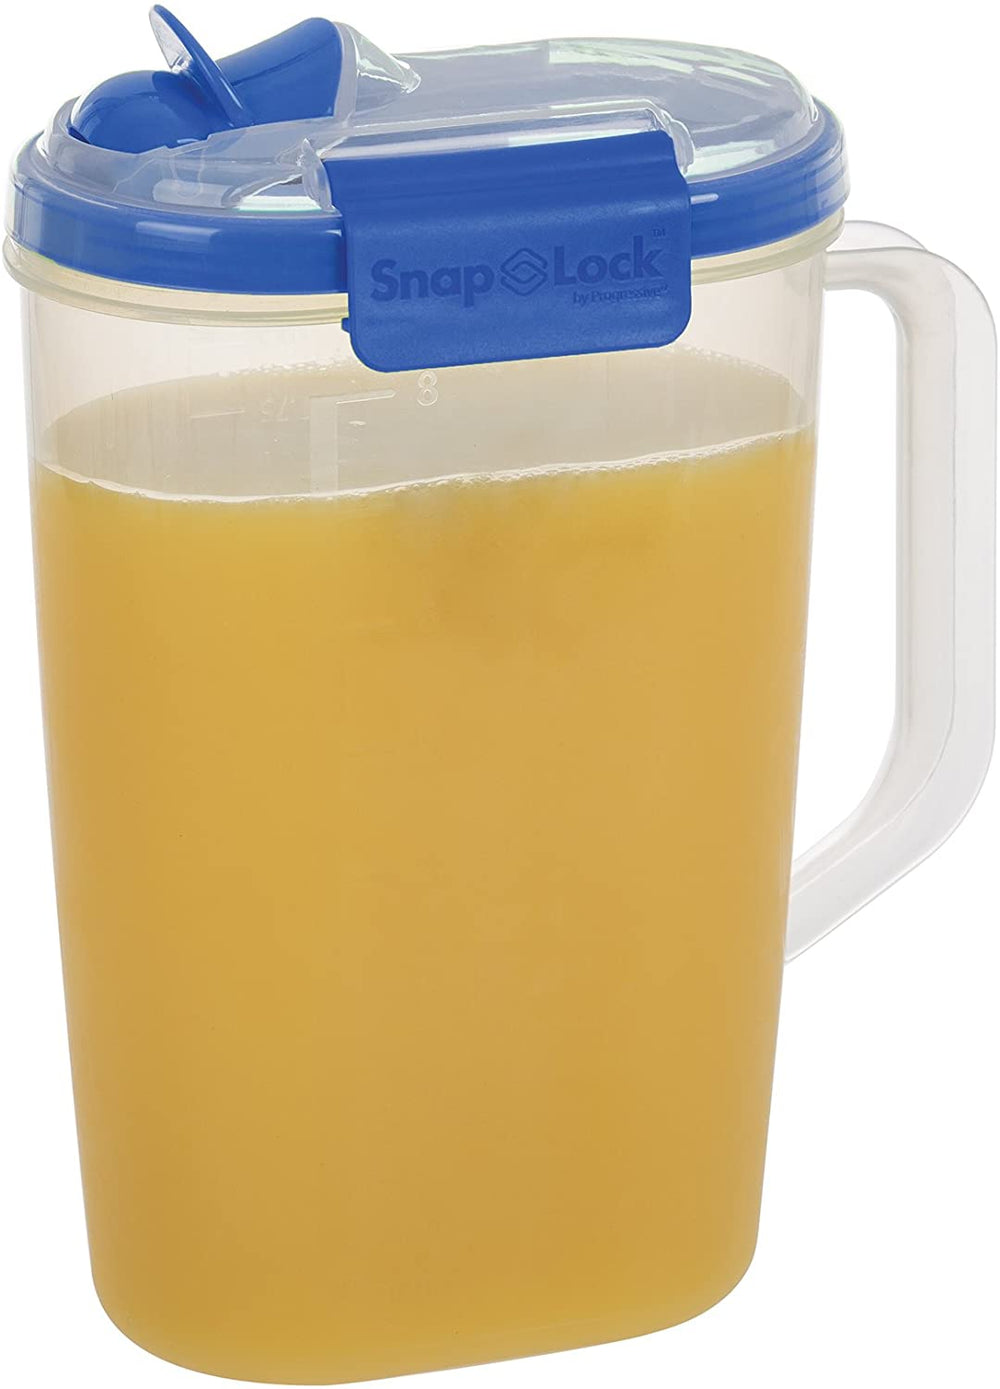 Progressive SnapLock Juice Pitcher - 8 cup